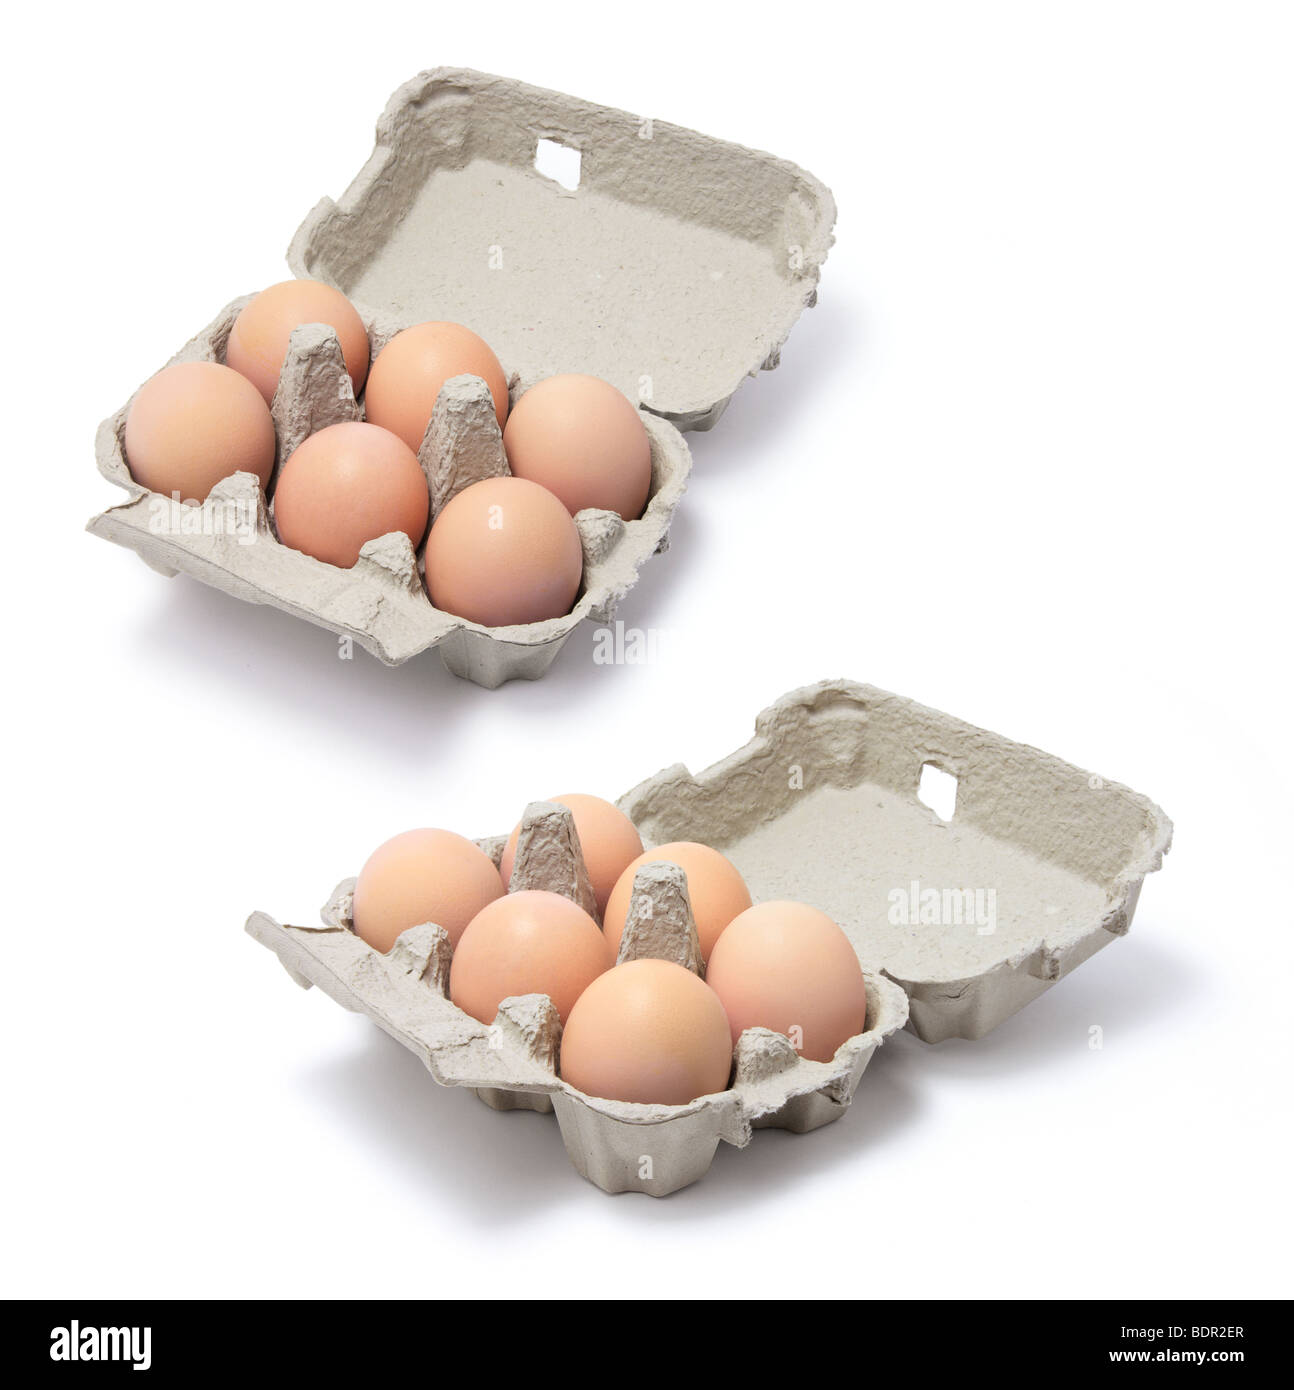 Los huevos en los cartones de huevo Foto de stock